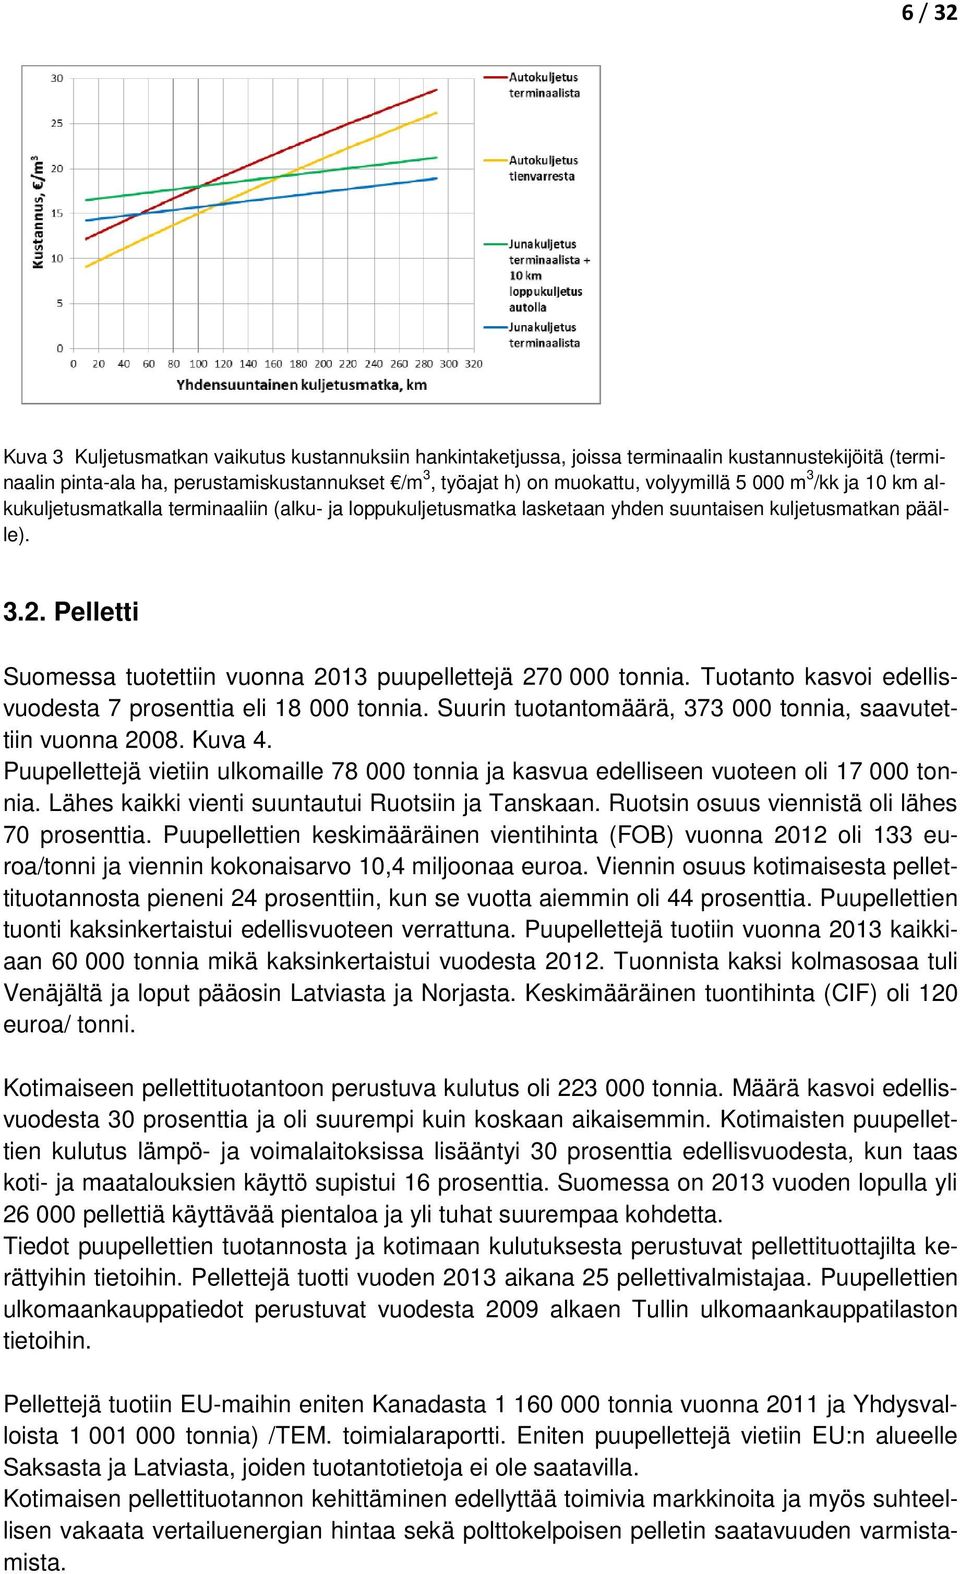 Pelletti Suomessa tuotettiin vuonna 2013 puupellettejä 270 000 tonnia. Tuotanto kasvoi edellisvuodesta 7 prosenttia eli 18 000 tonnia. Suurin tuotantomäärä, 373 000 tonnia, saavutettiin vuonna 2008.